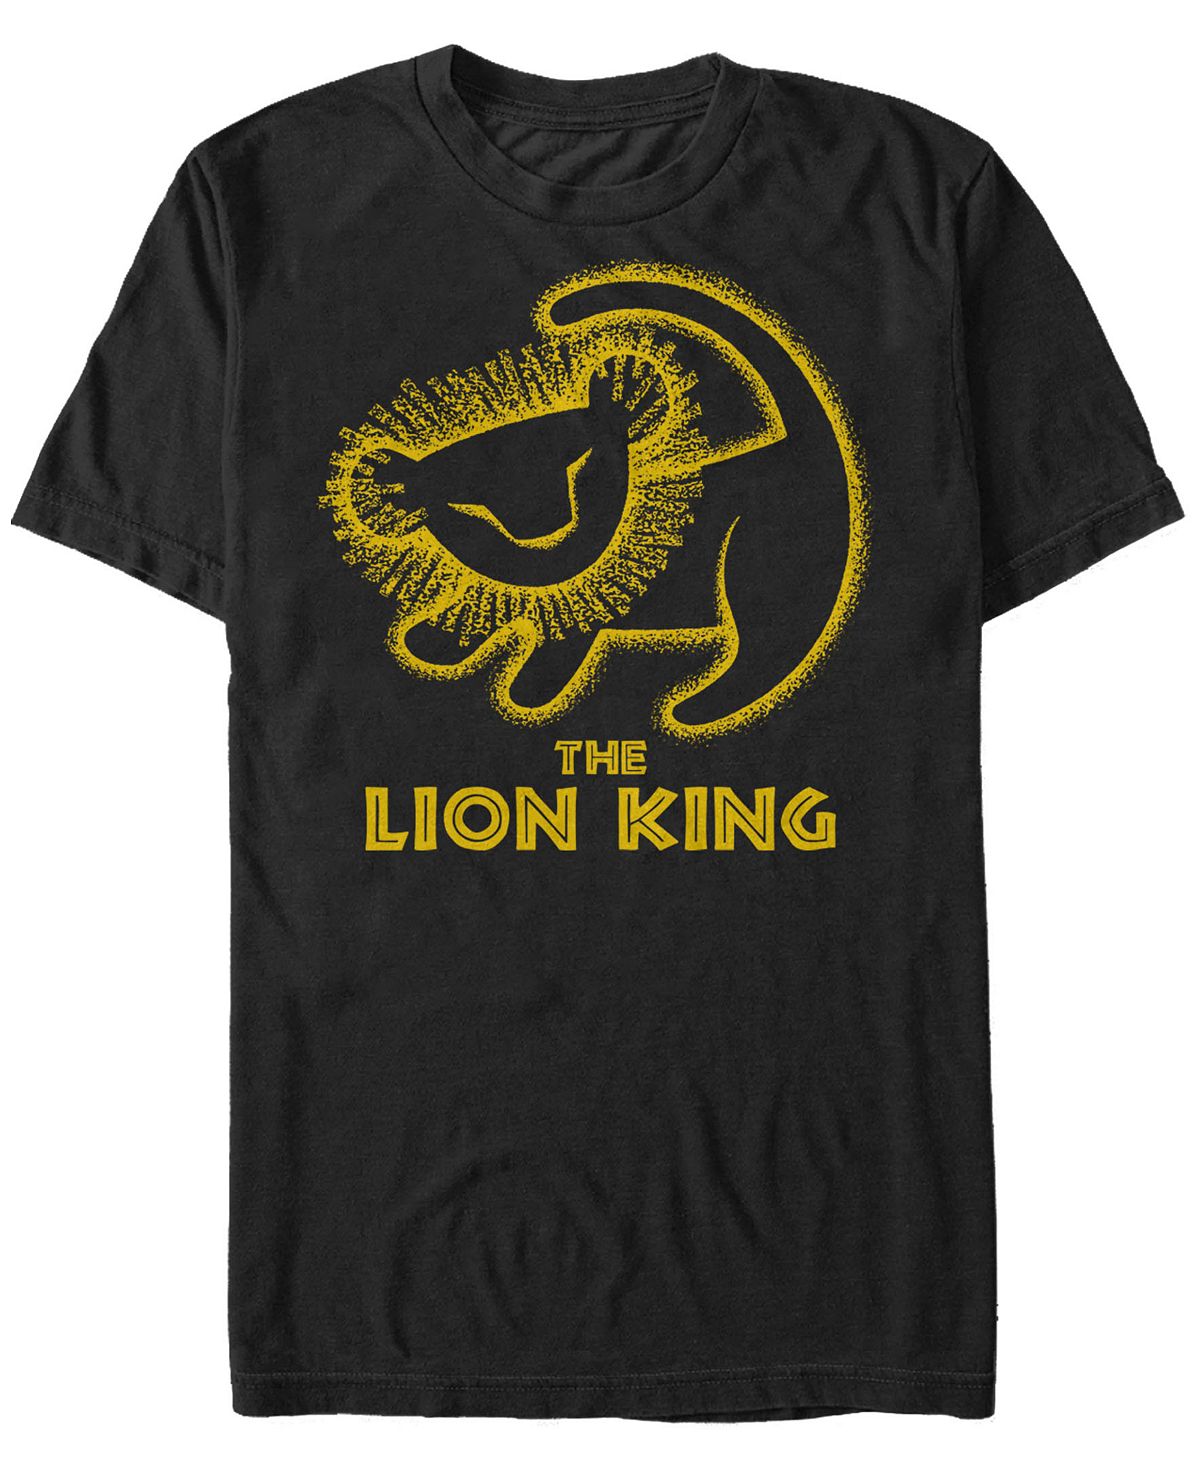 Мужская футболка с коротким рукавом disney king lion simba cave painting Fifth Sun, черный цена и фото